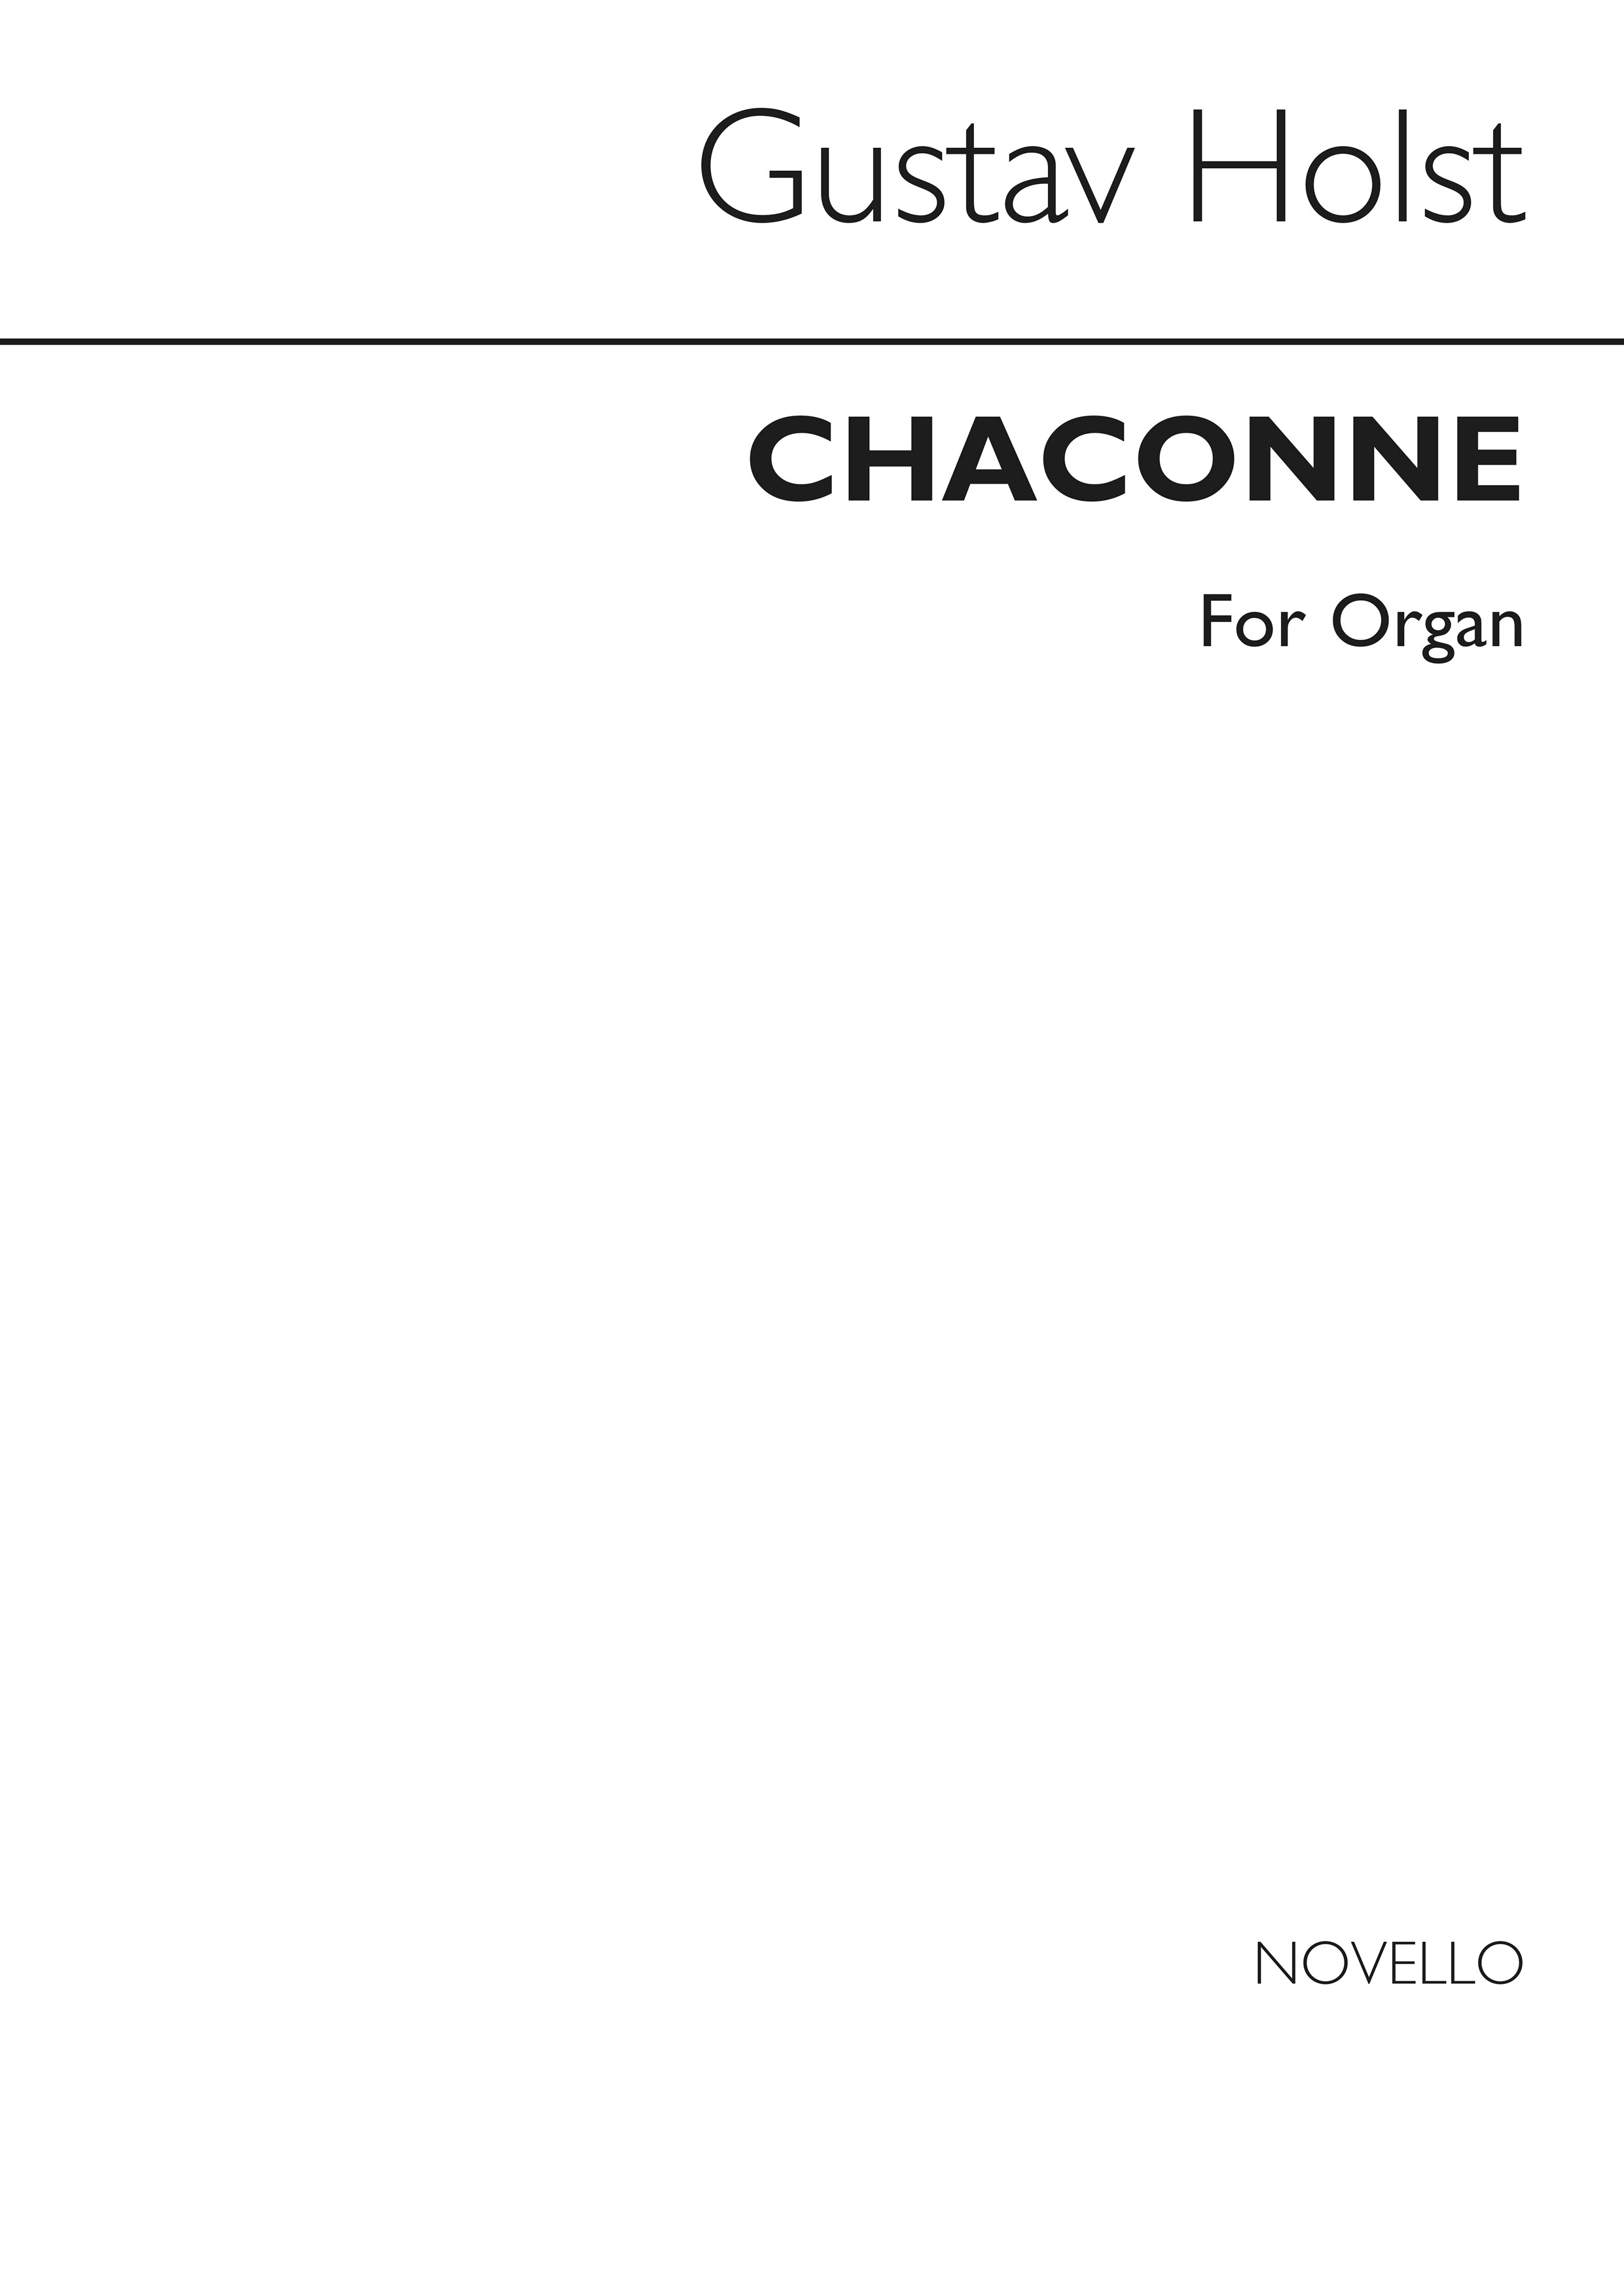 Gustav Holst: Chaconne For Organ (Henry Ley)